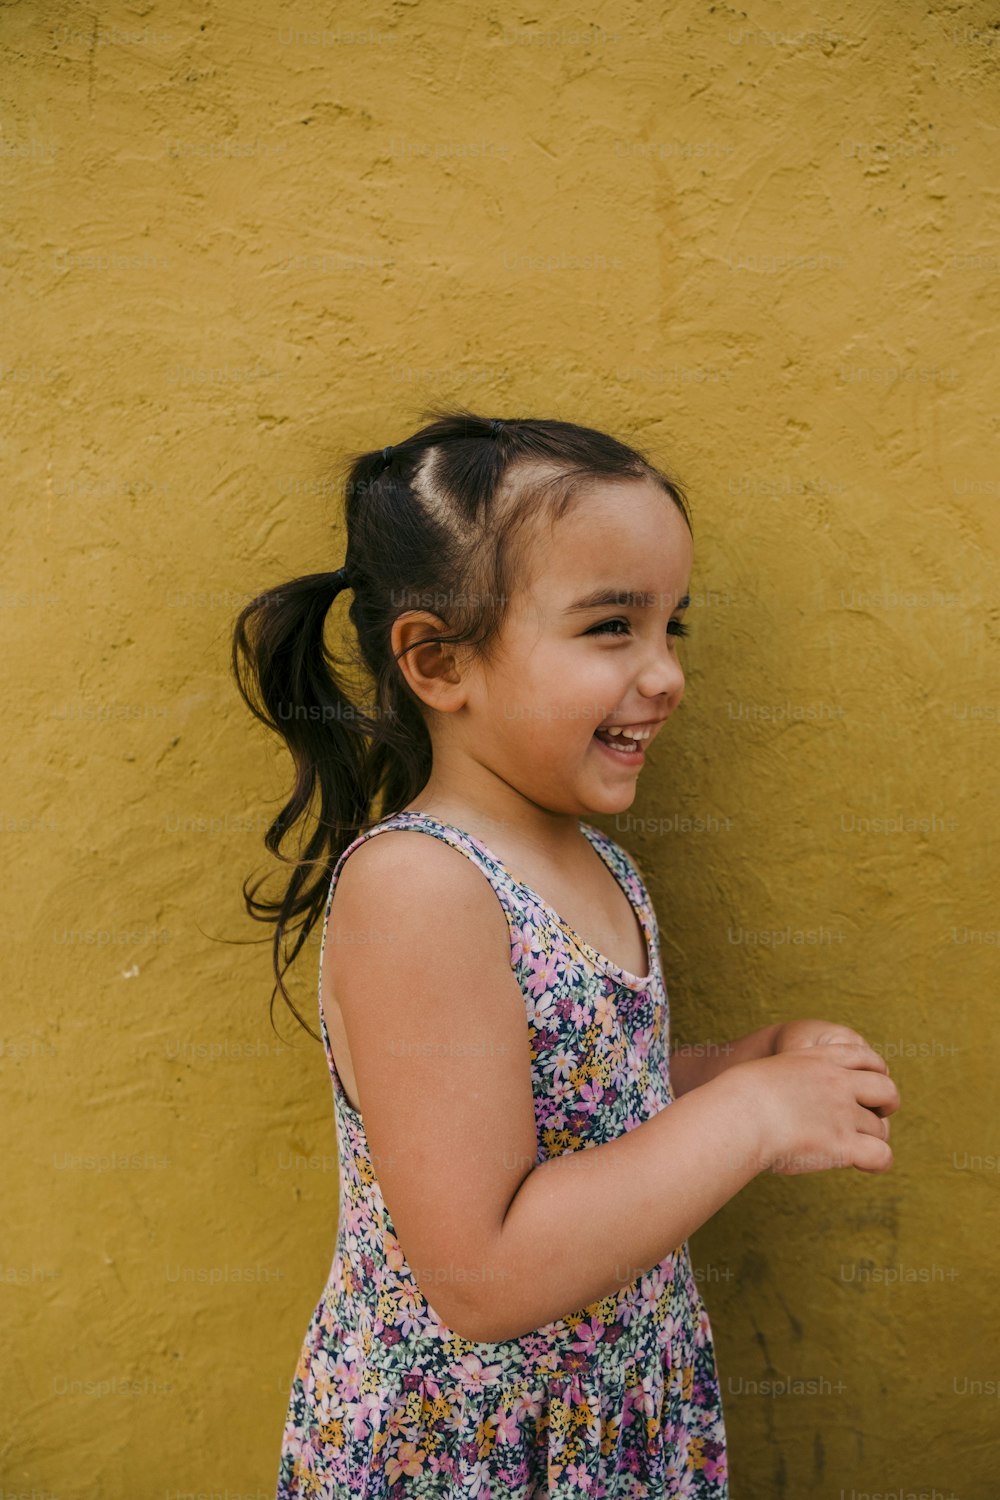 Ein kleines Mädchen steht vor einer gelben Wand